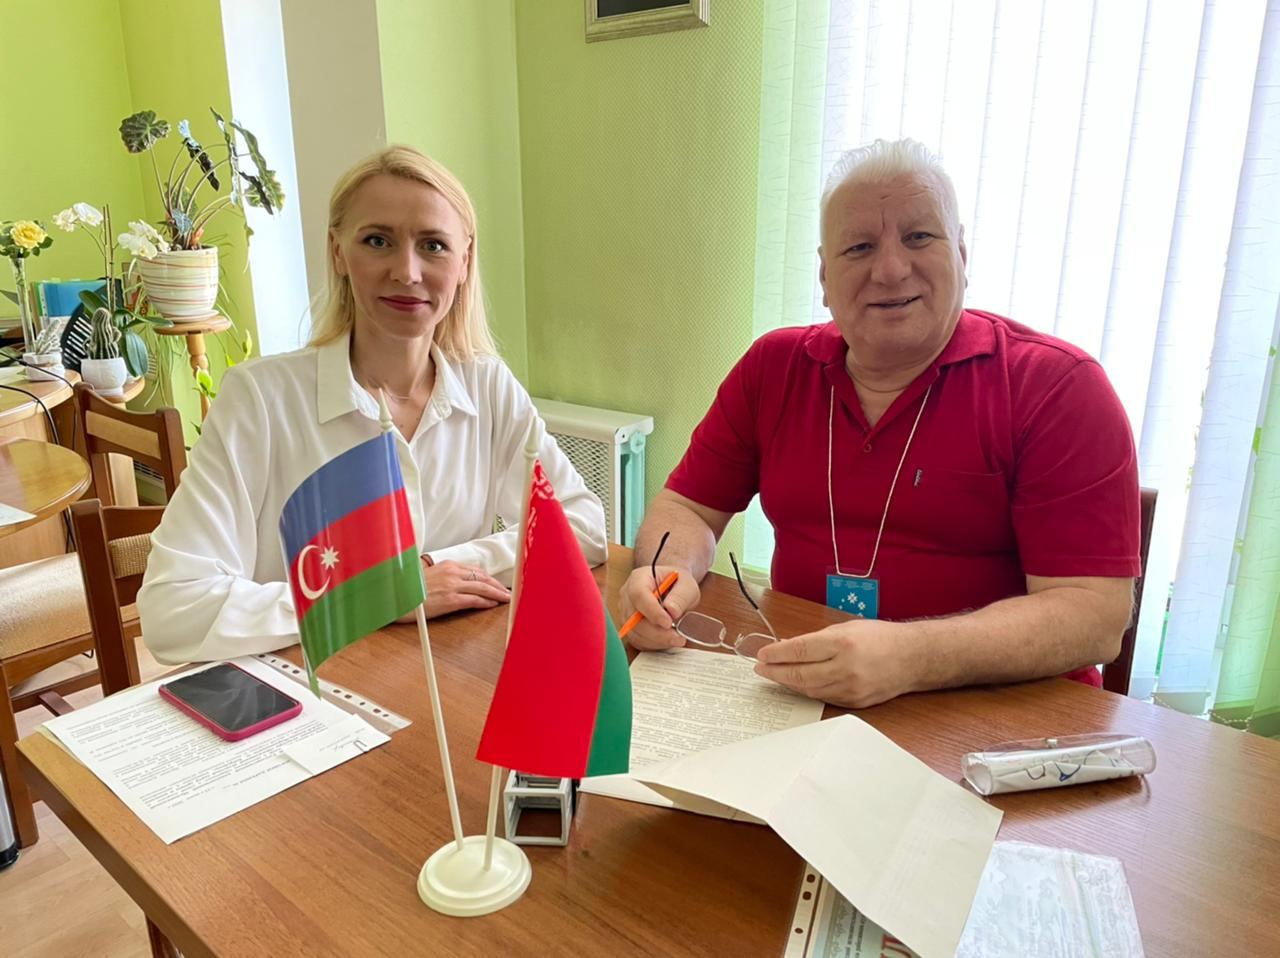 Заключено соглашение между театрами Азербайджана и Беларуси - обмен творческими коллективами, премьеры (ФОТО)